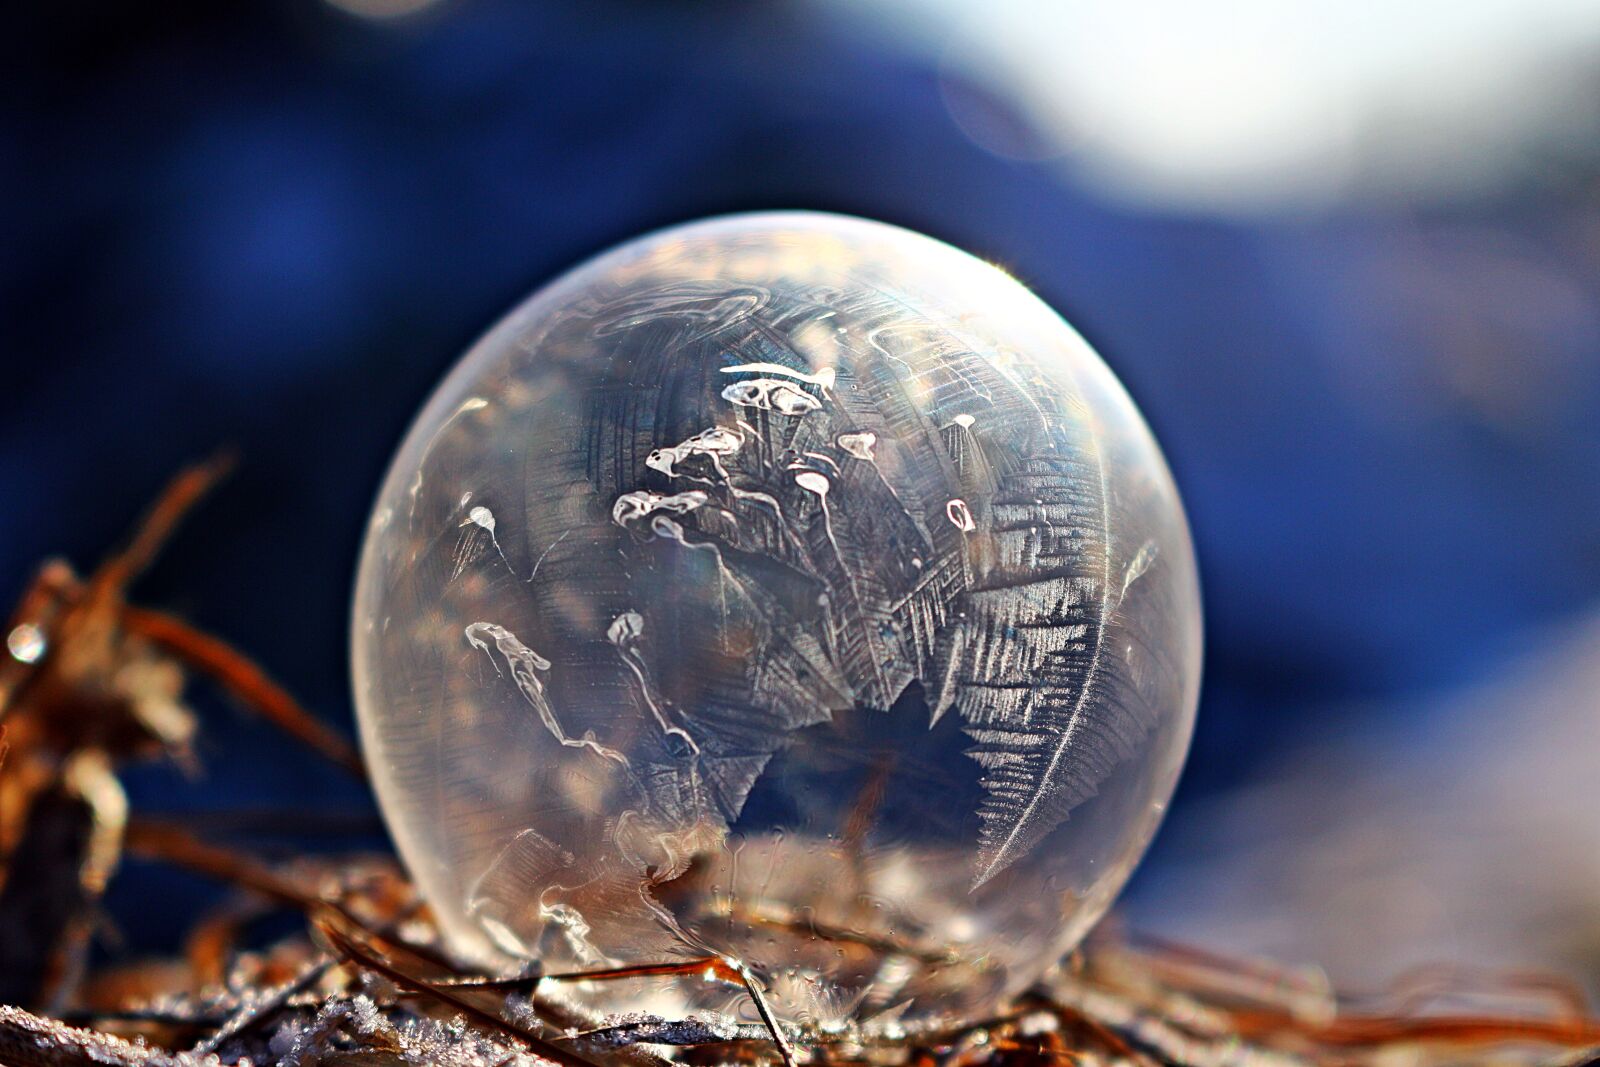 Canon EOS 100D (EOS Rebel SL1 / EOS Kiss X7) sample photo. Frozen bubble, ice bubble photography